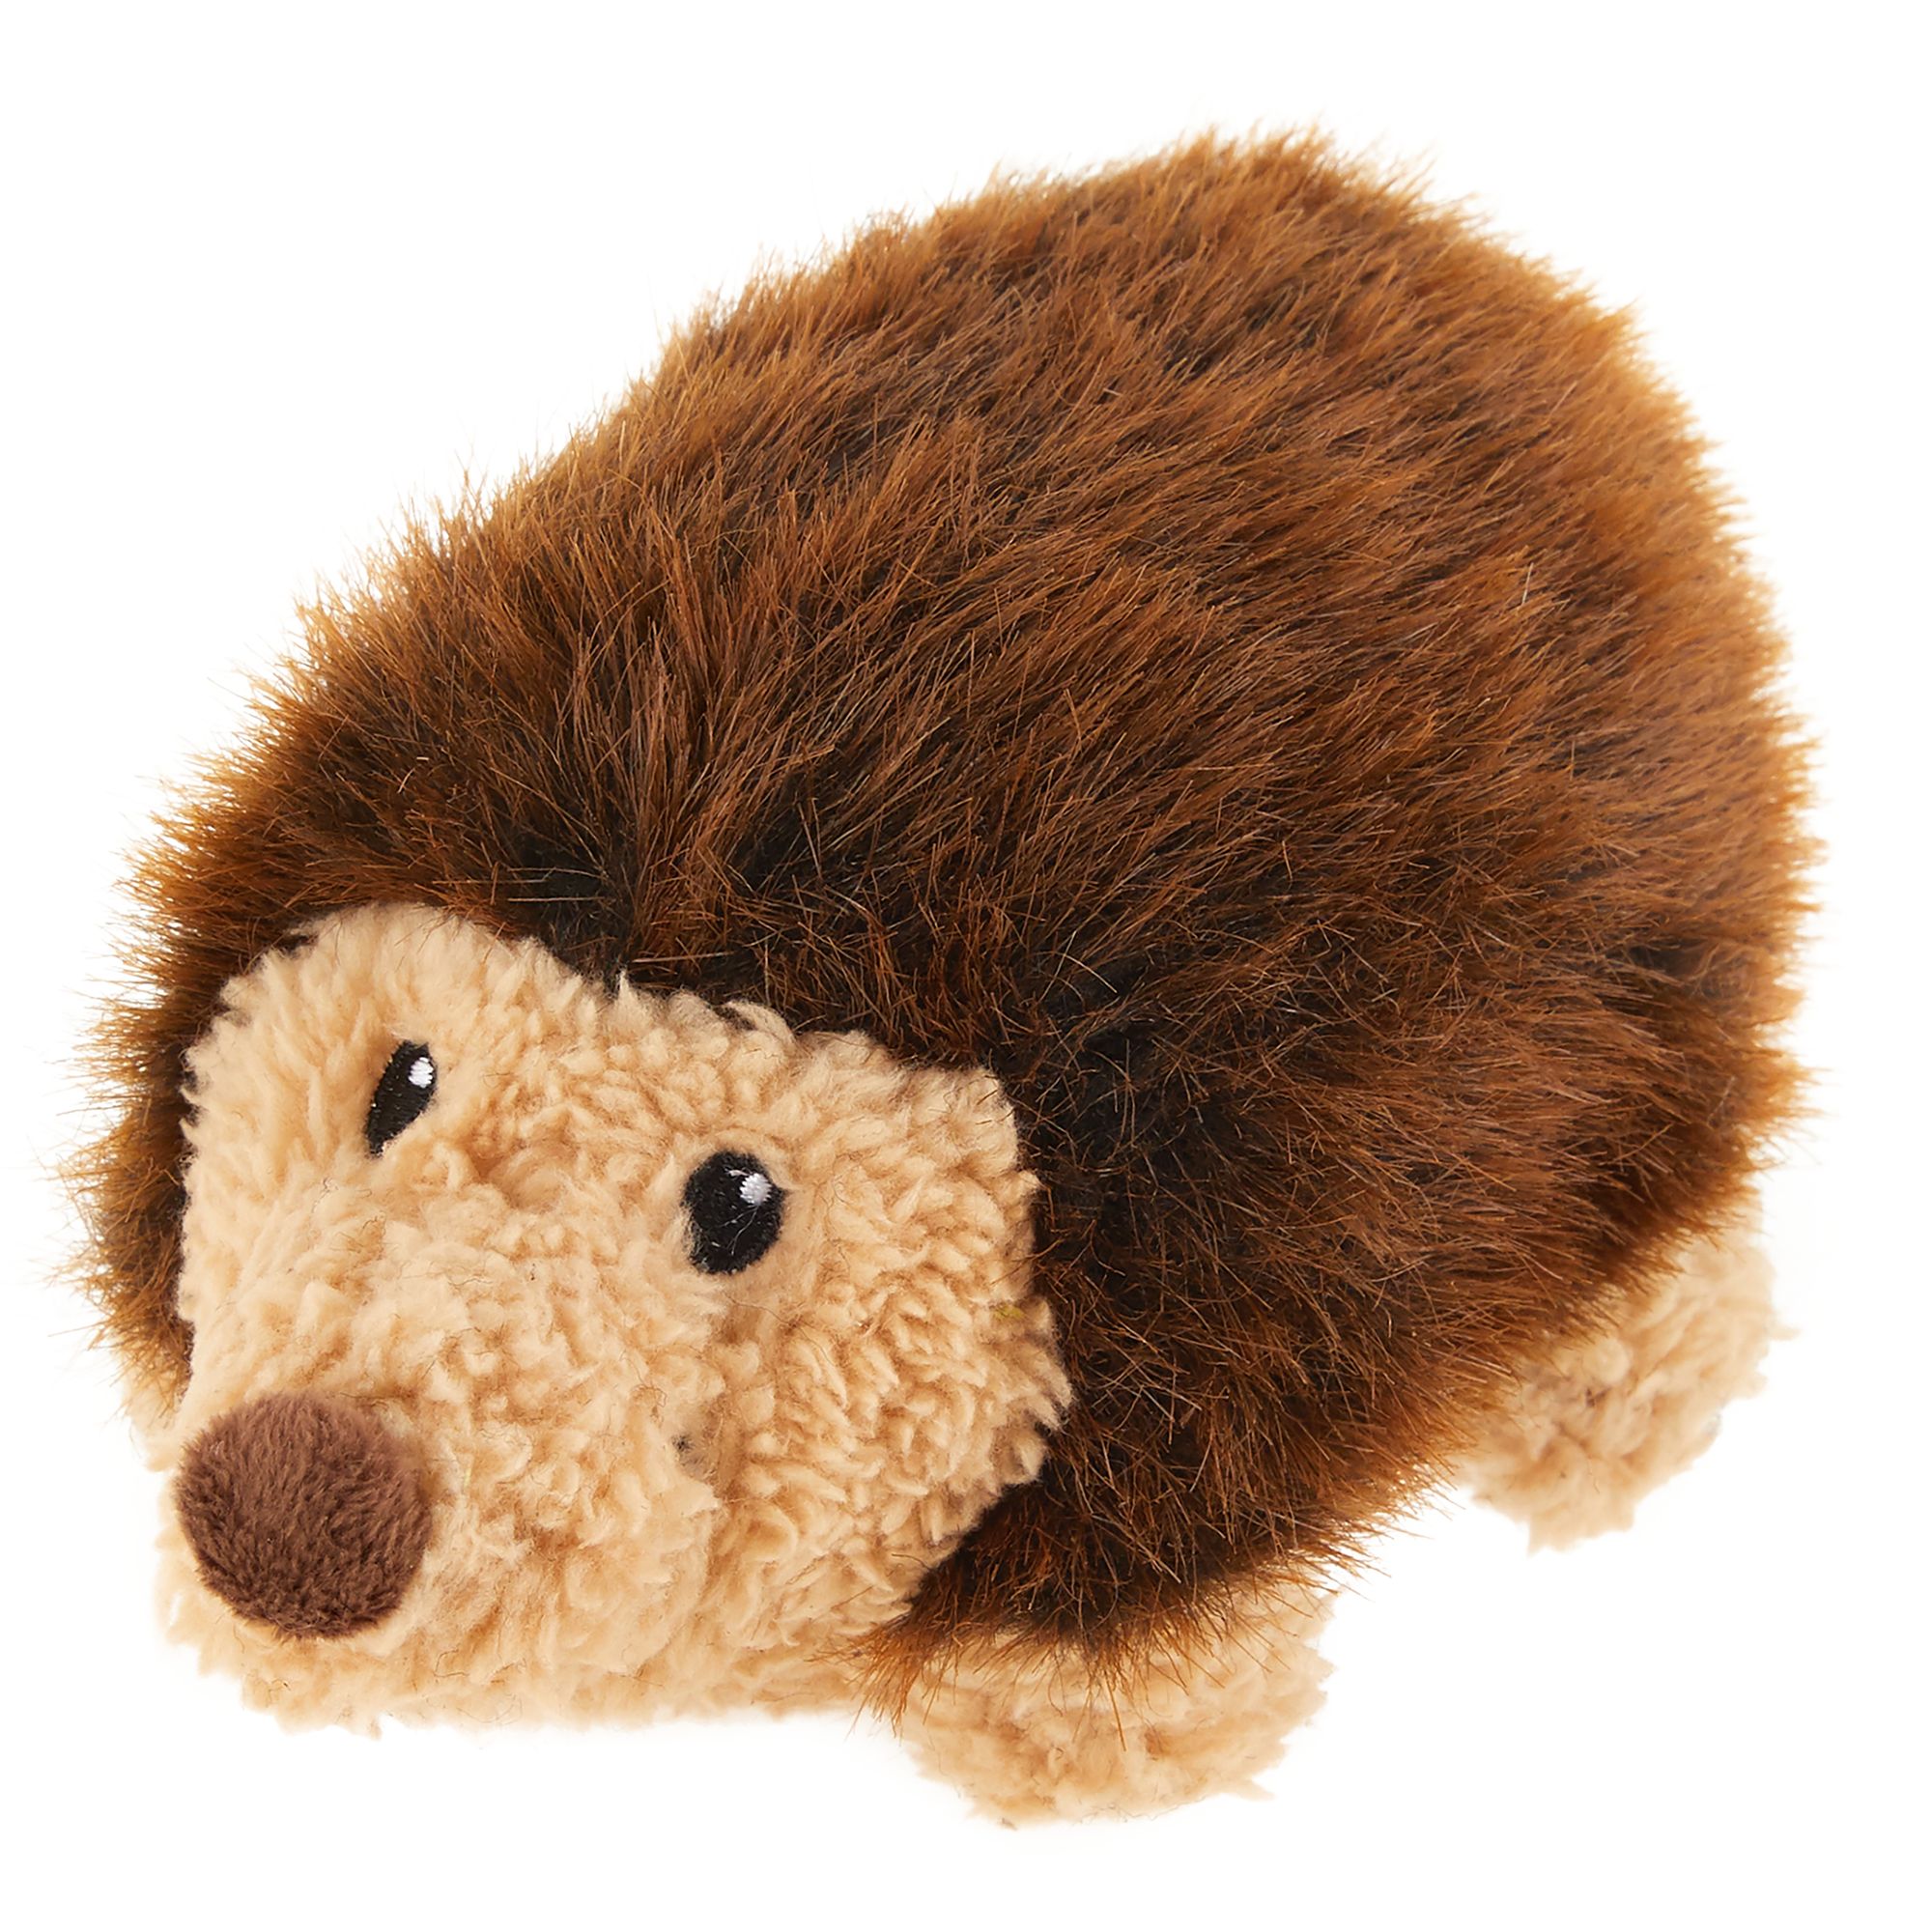 grunting hedgehog dog toy